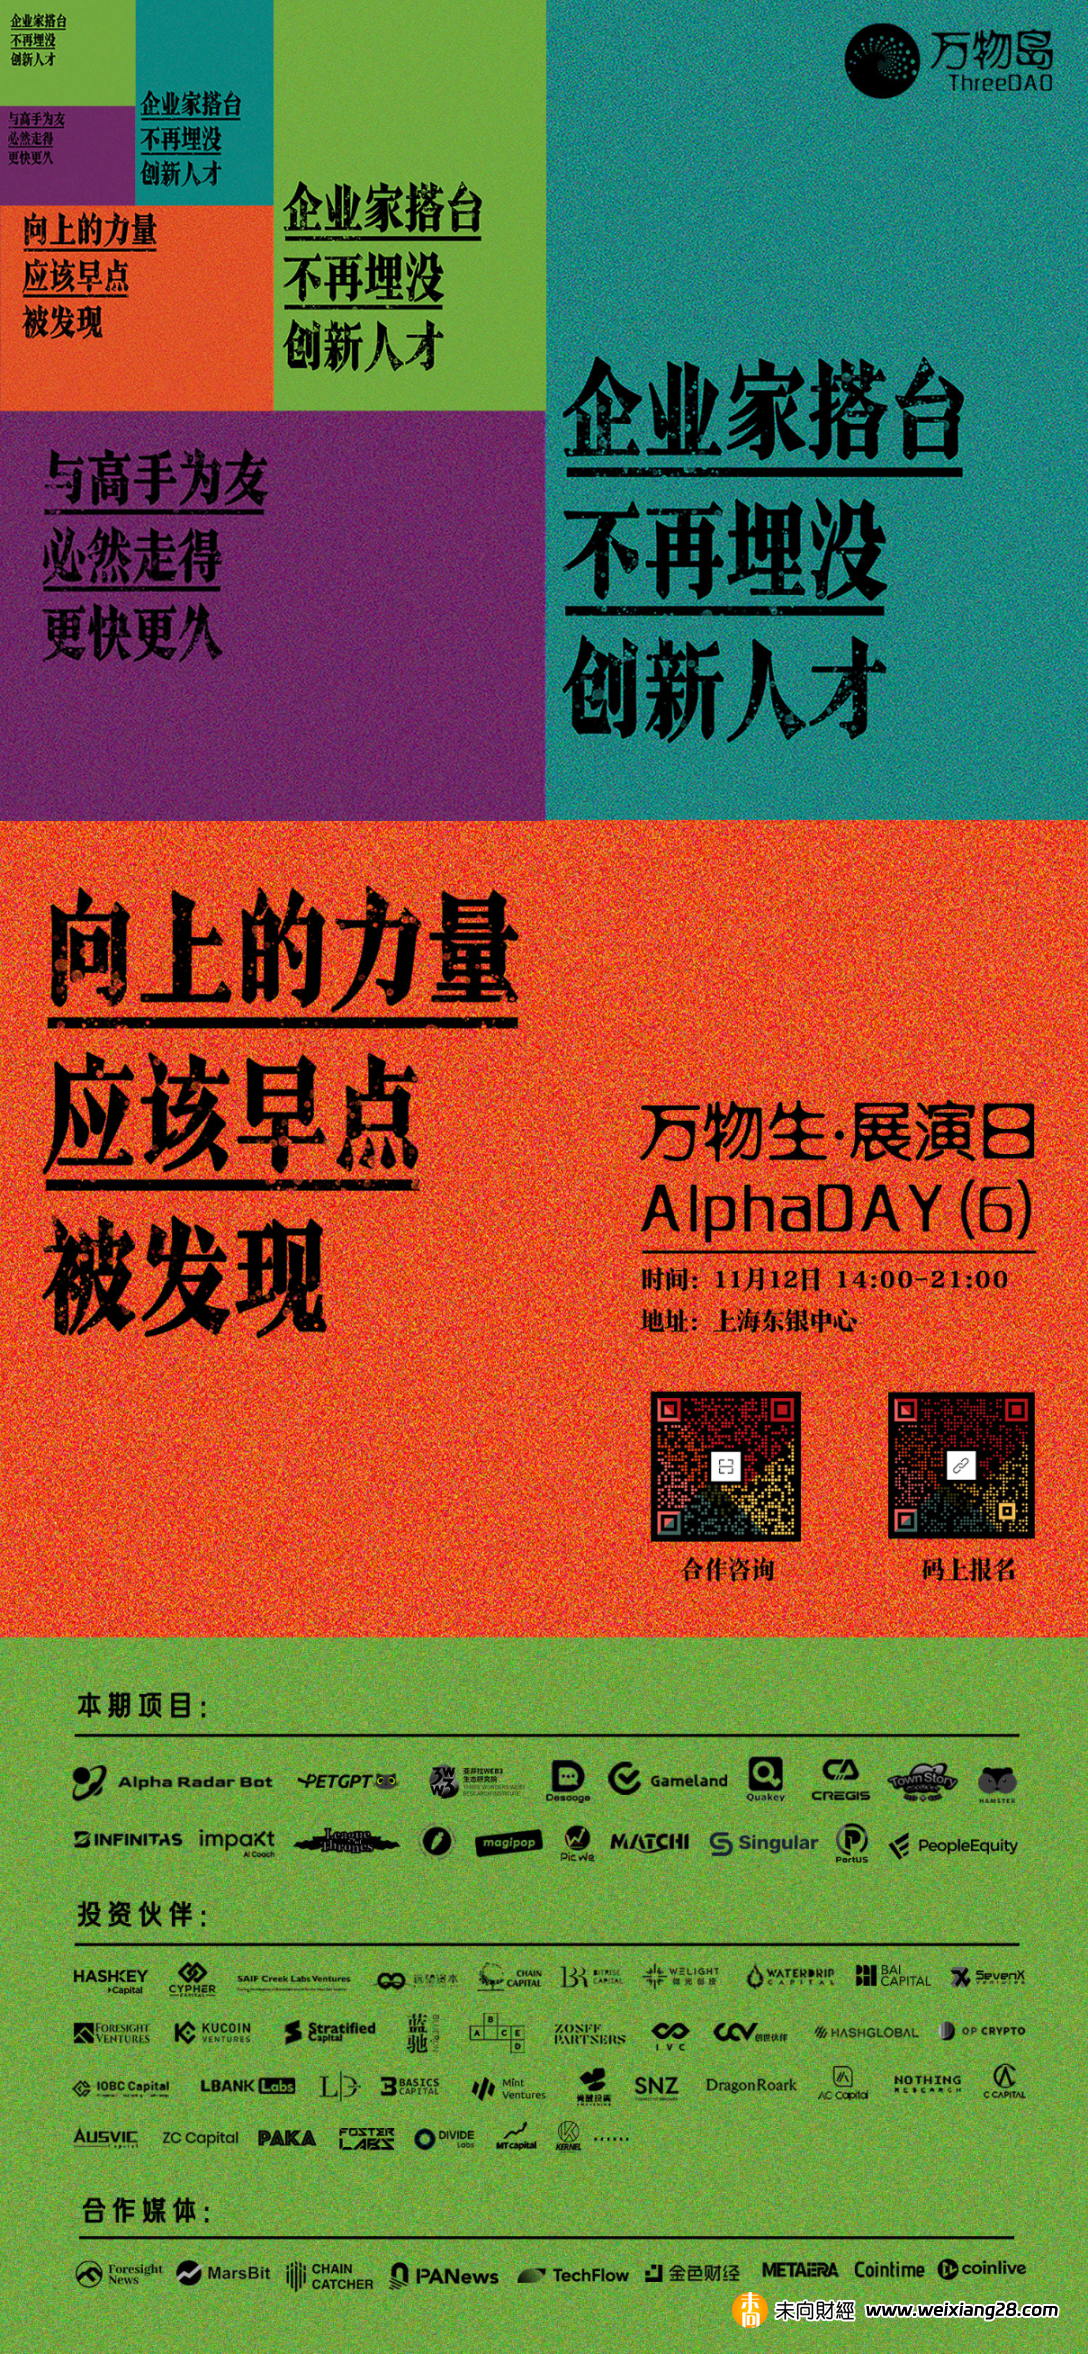 萬物生AlphaDAY 預定11.12 日上海舉行，20 位創辦人將赴現場路演插图